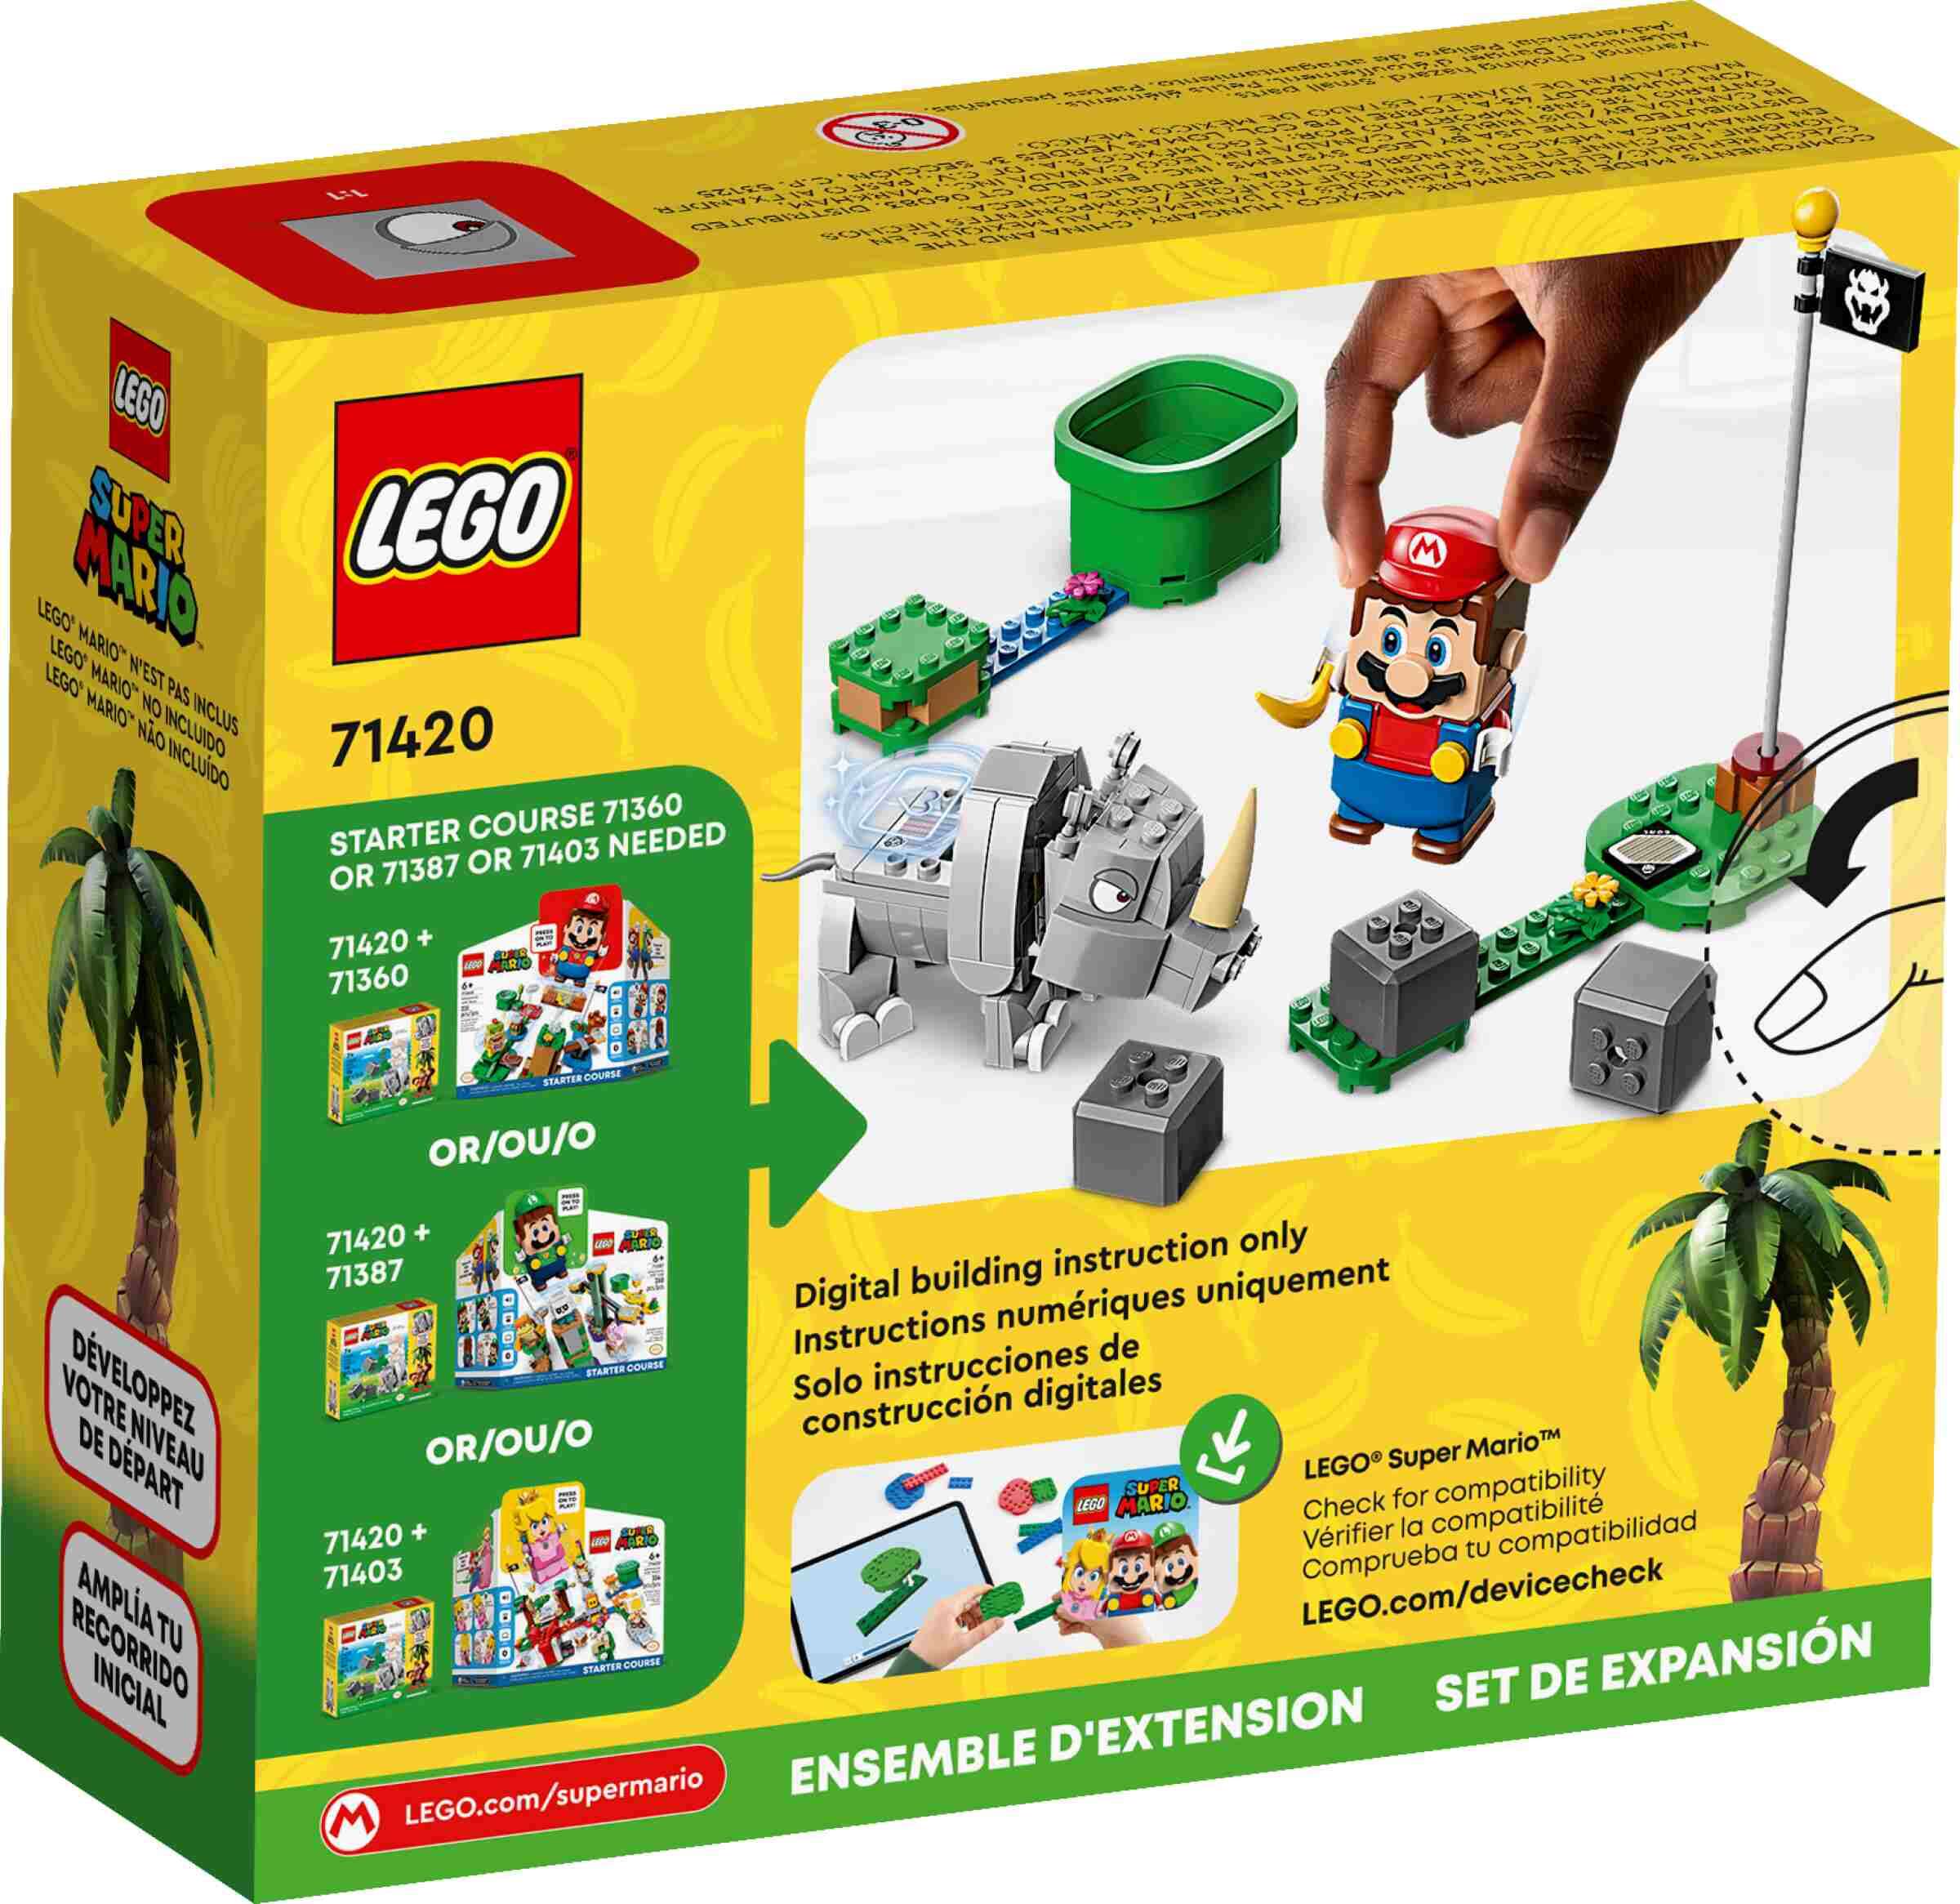 LEGO 71420 Super Mario Rambi das Rhino – Erweiterungsset